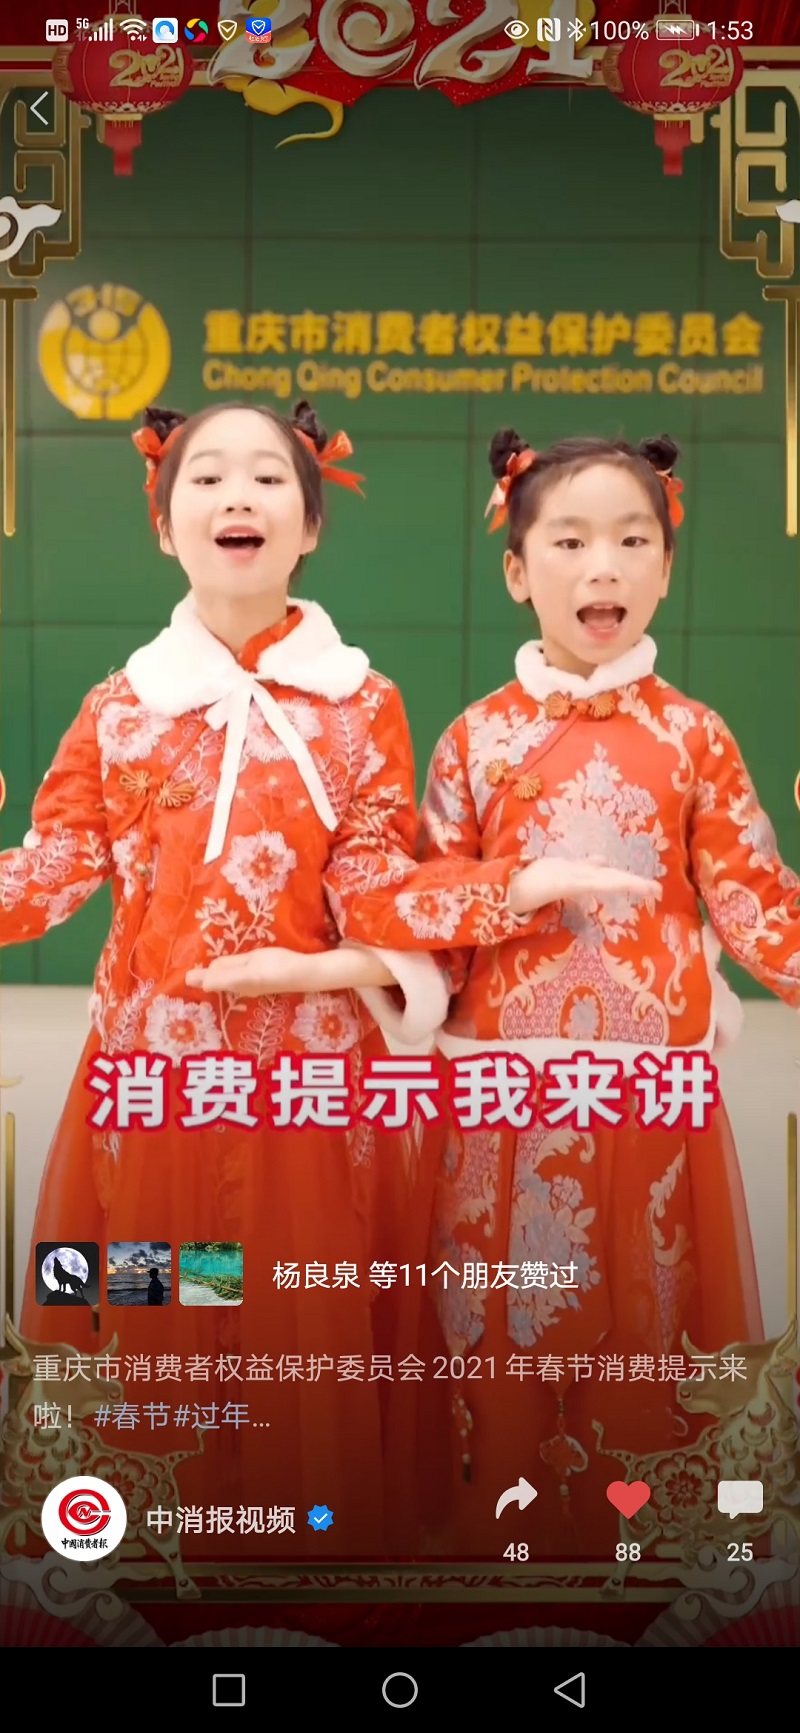 童谣视频发消费提示 重庆消委会创新发布方式